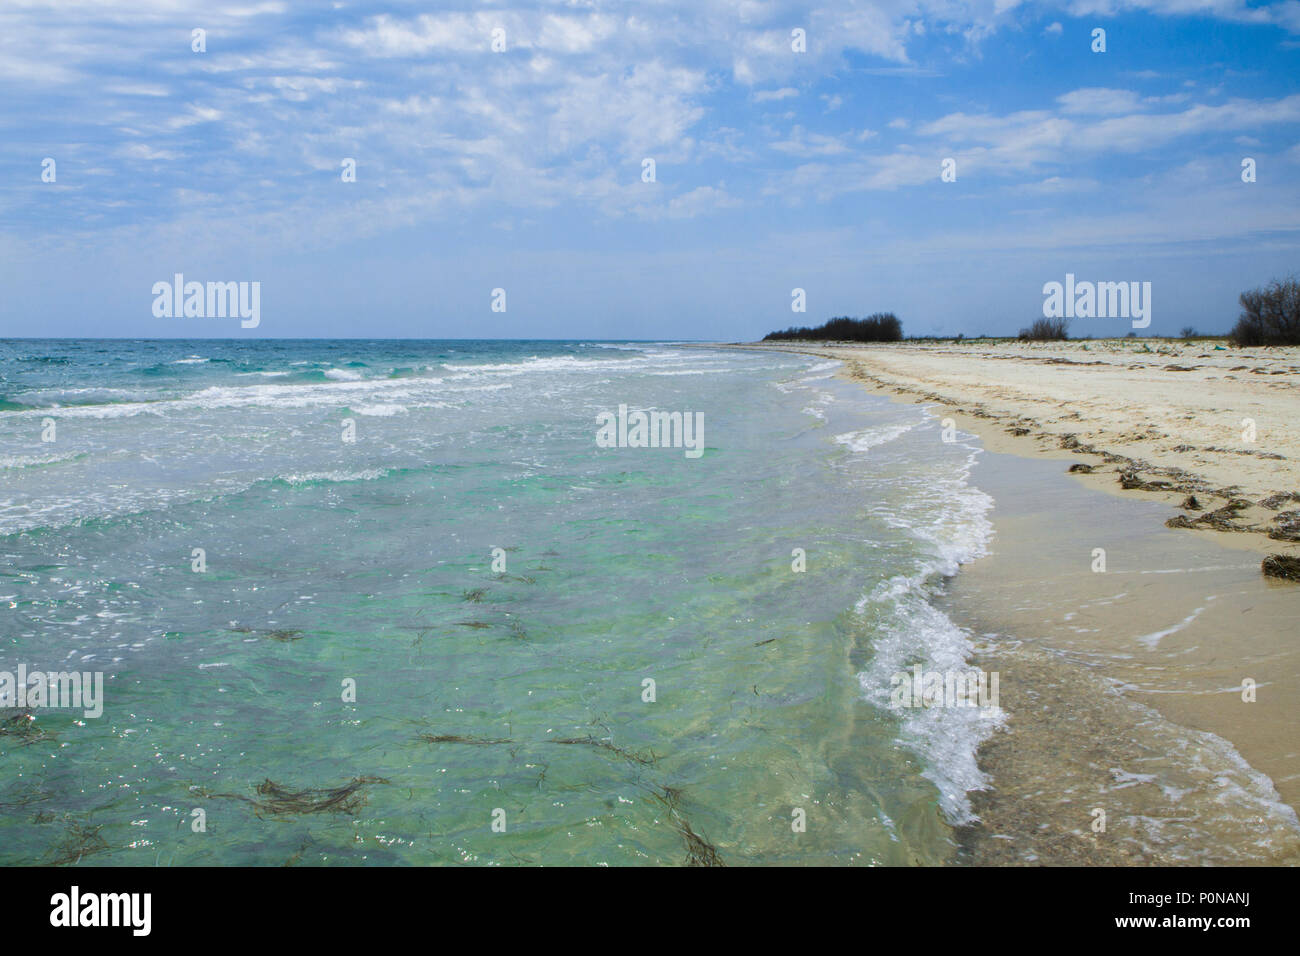 Il deserta fiaba spiaggia con sabbia dorata, bellissimo cielo e acqua turchese sulle rive dell'oceano. Foto Stock